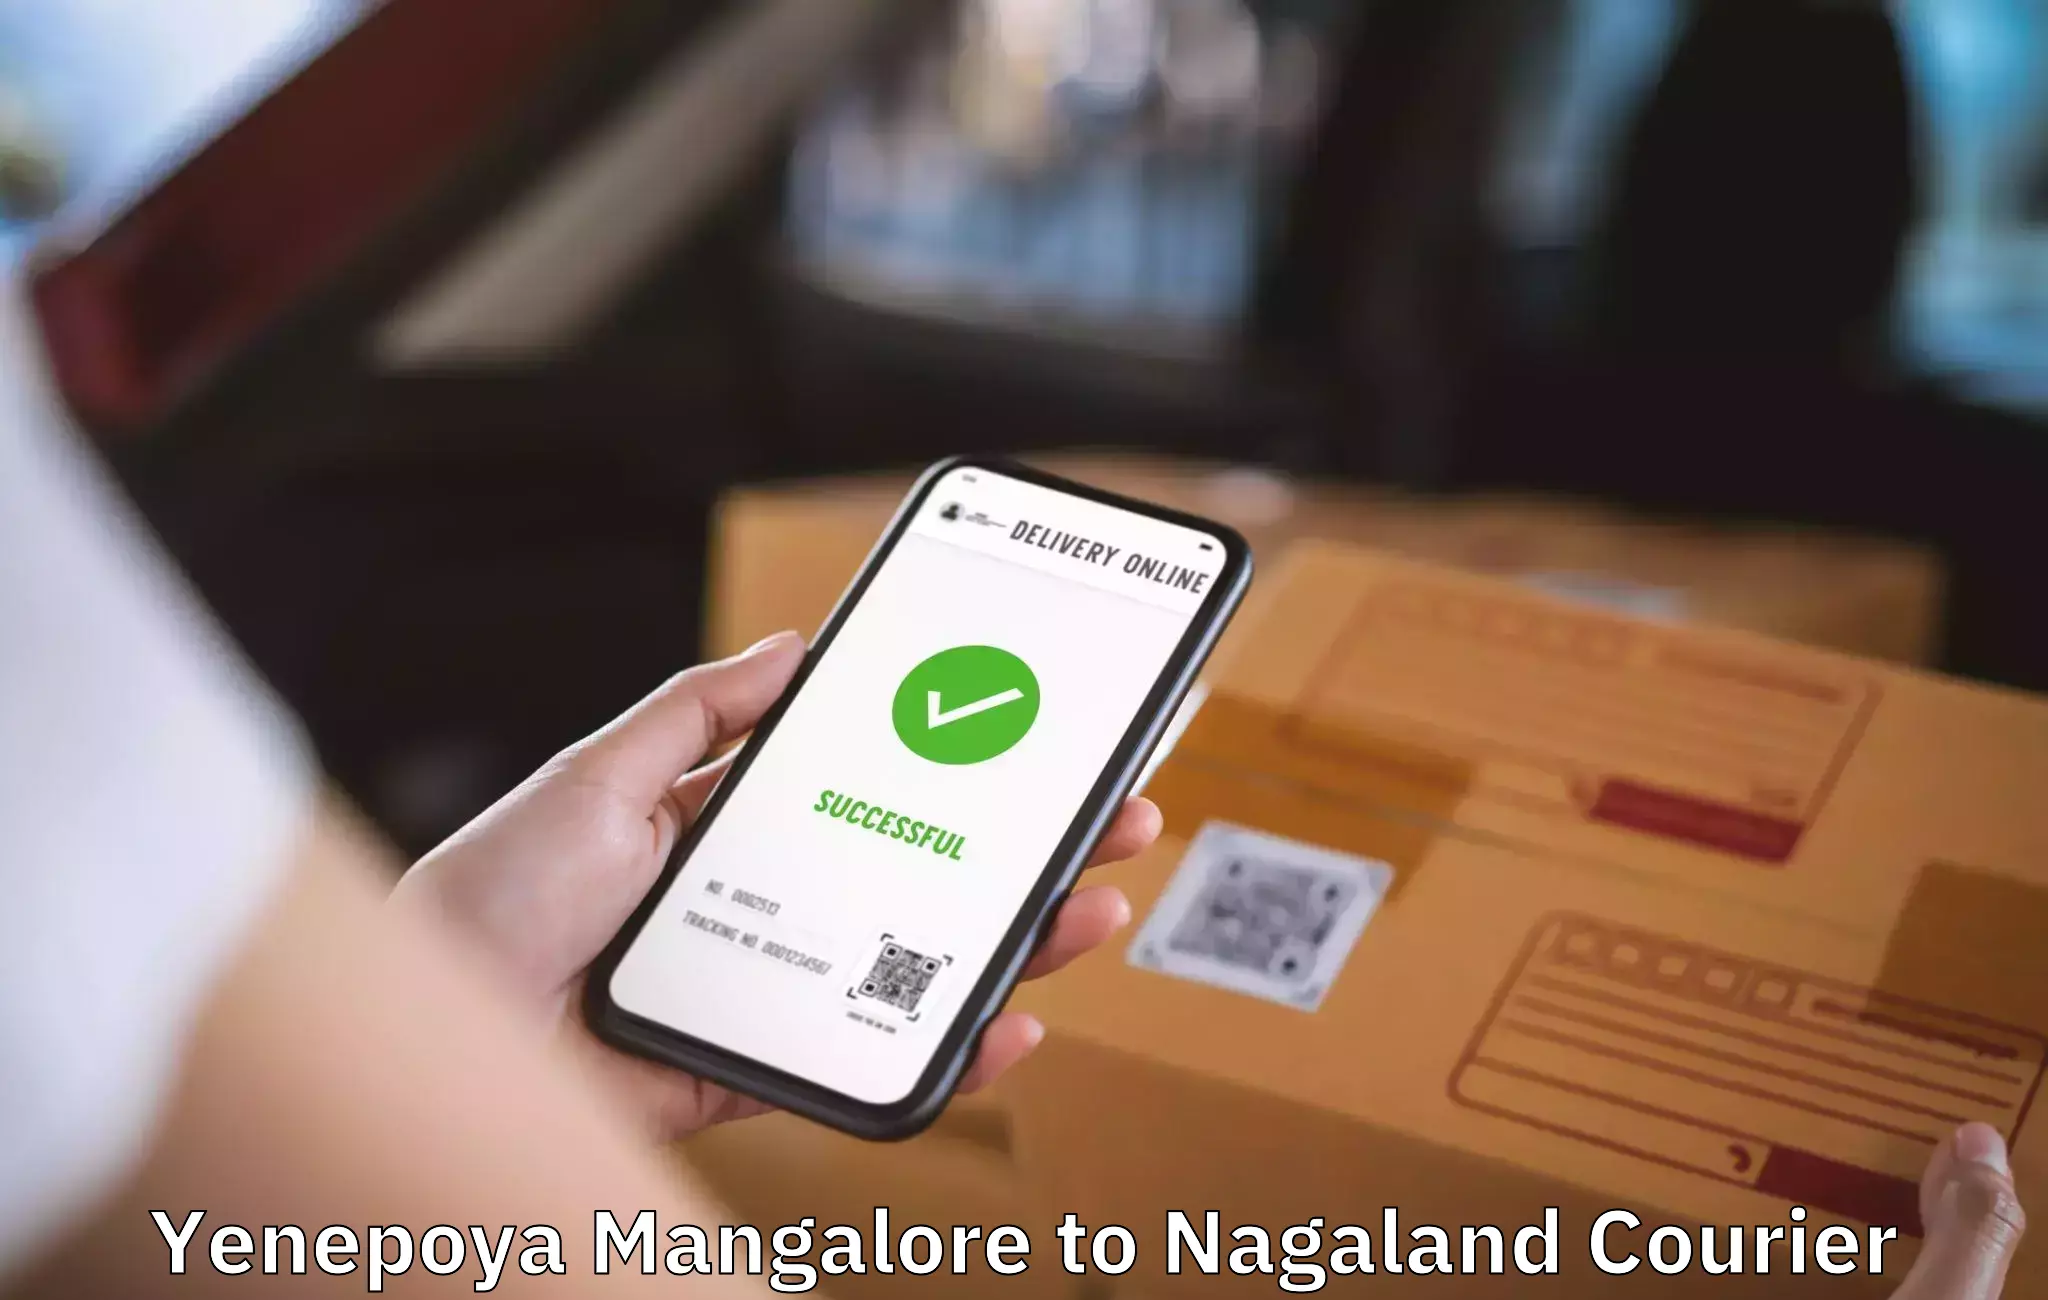 Furniture moving service Yenepoya Mangalore to NIT Nagaland